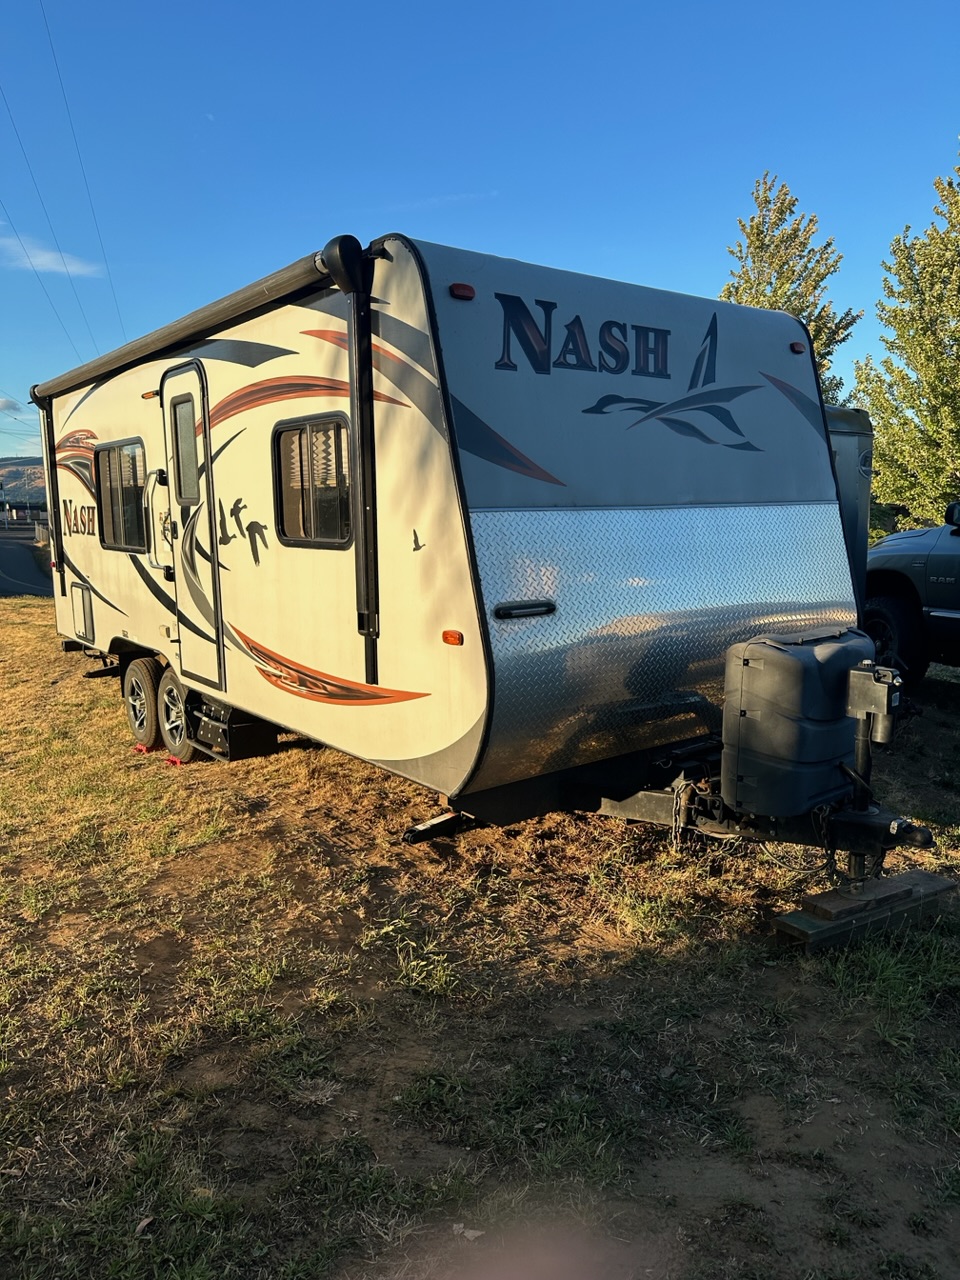 Nash Travel trailer 22G 2/7 update